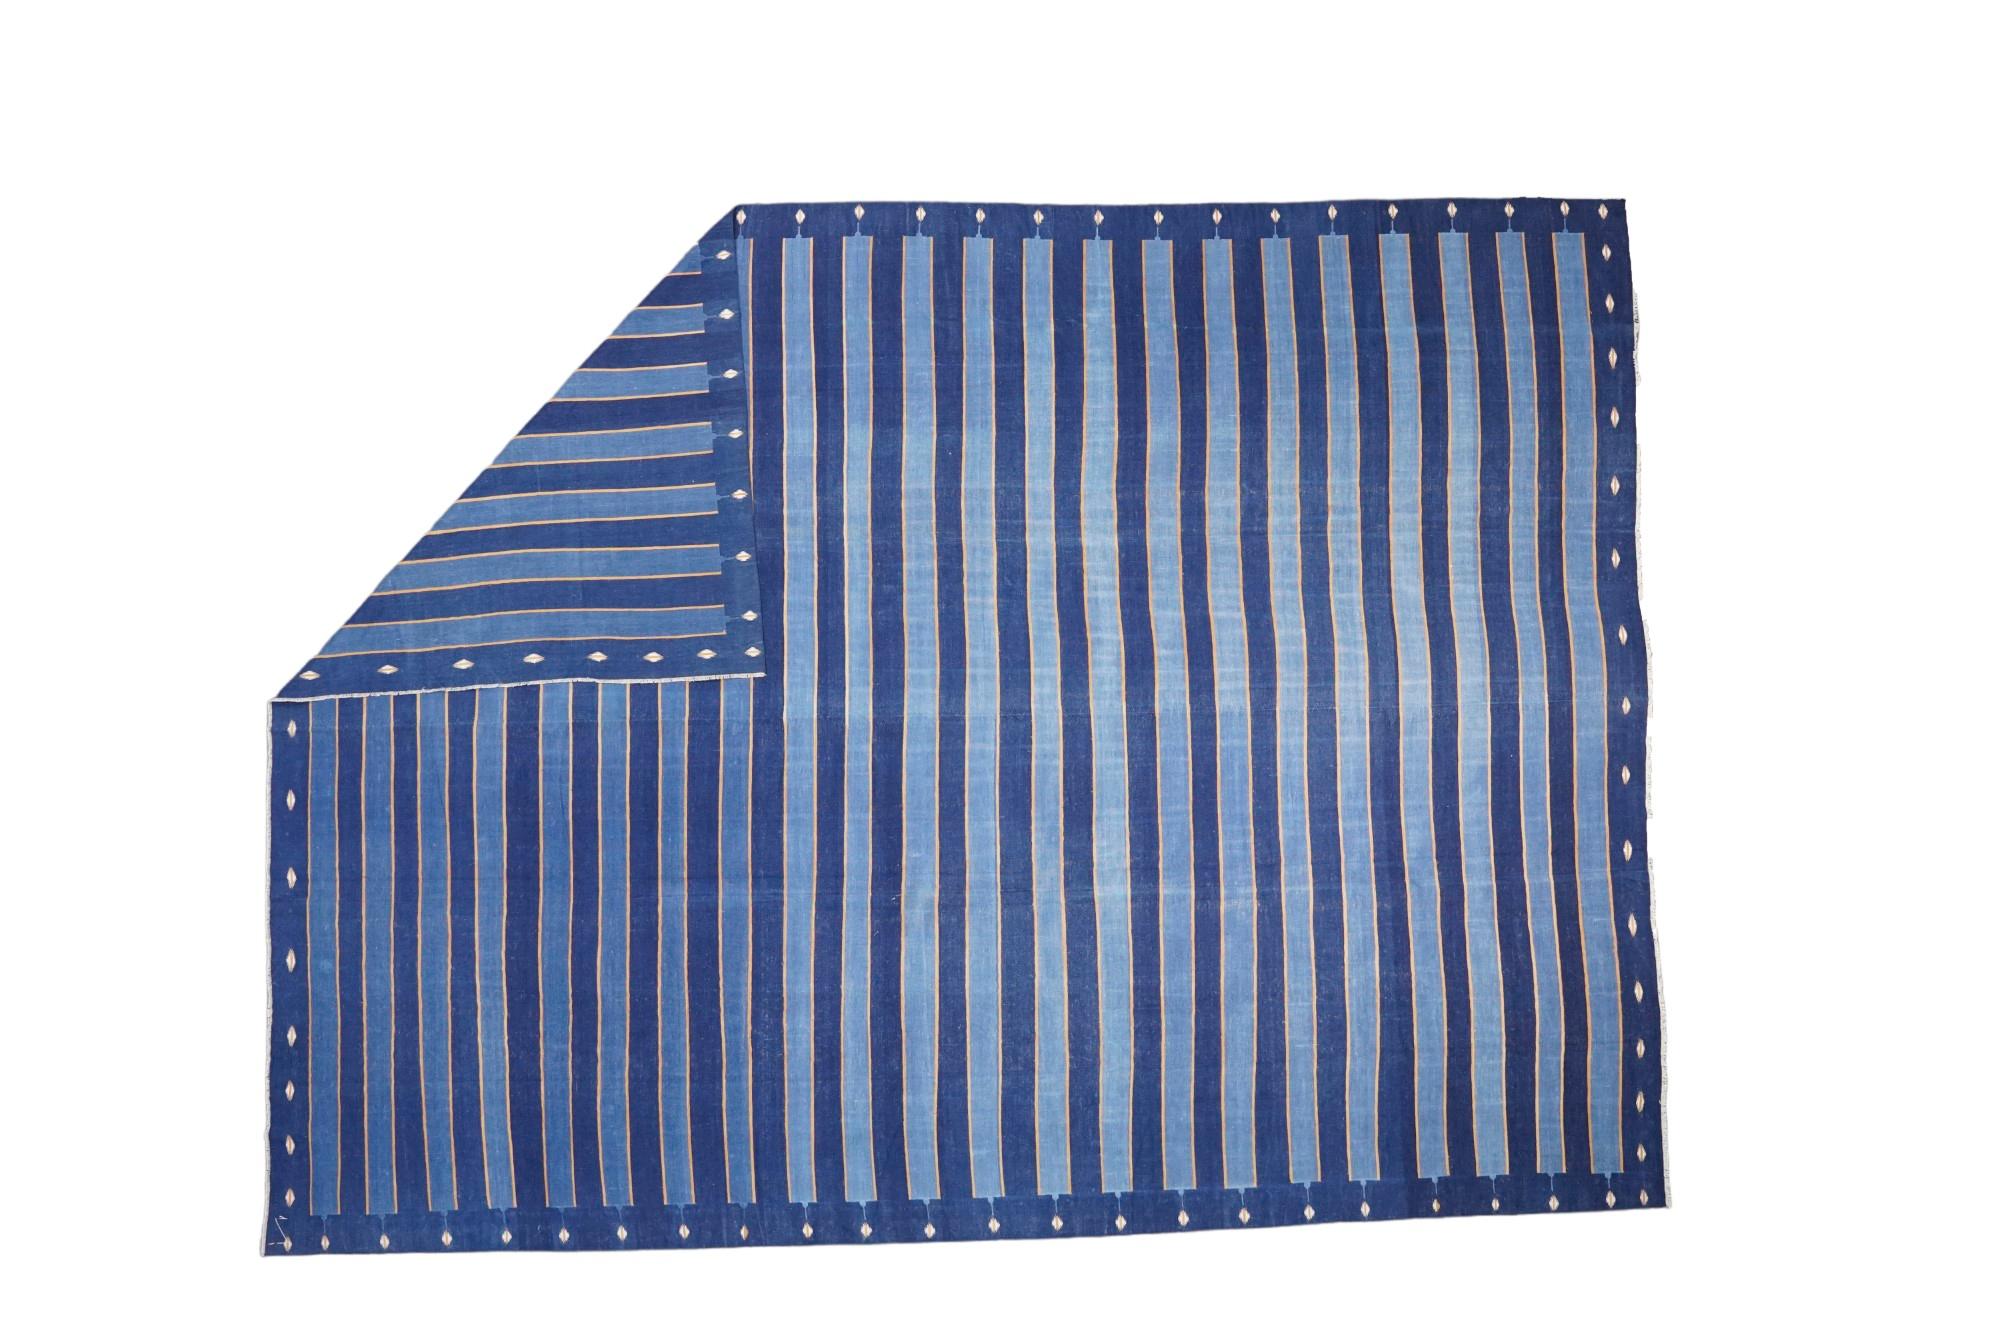 Dieser 12x18 große Teppich ist ein seltener Vintage-Dhurrie-Teppich aus einer aufregenden neuen Kuration von Rug &New Kilim aus der Mitte des Jahrhunderts. Das handgewebte Flachgewebe aus Wolle stammt aus Indien (ca. 1950-1960) und weist blaue